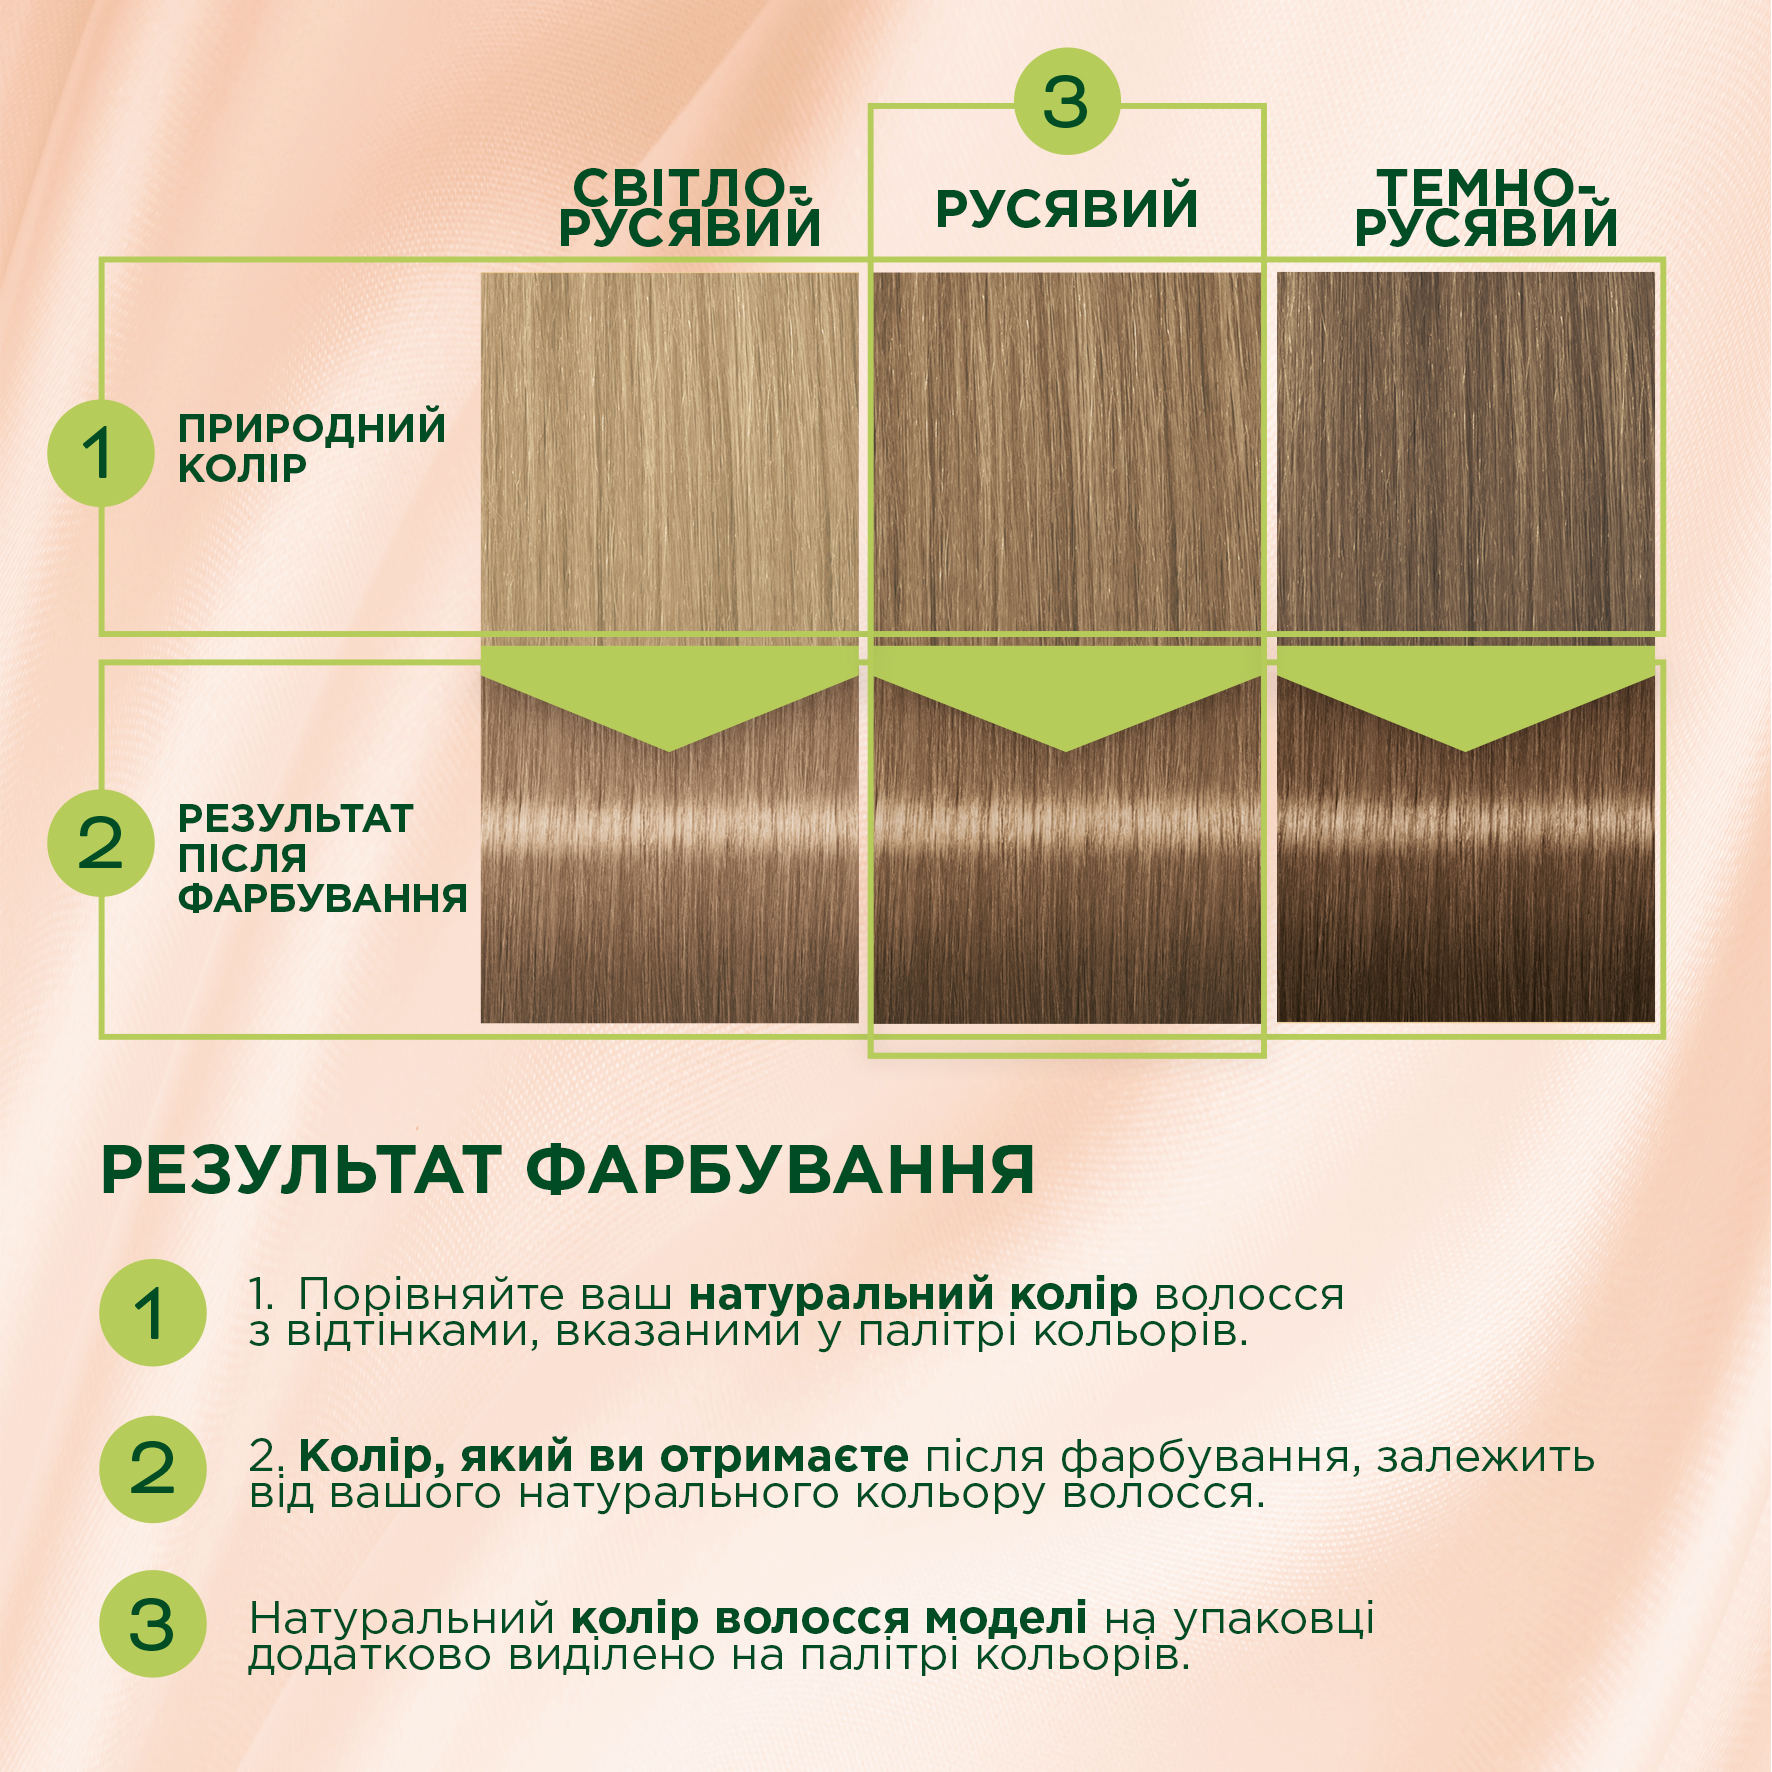 Стійка крем-фарба для волосся Schwarzkopf Palette Naturals, без аміаку, L6-0 Скандинавський блондин (Освітлювач), 110 мл - фото 2